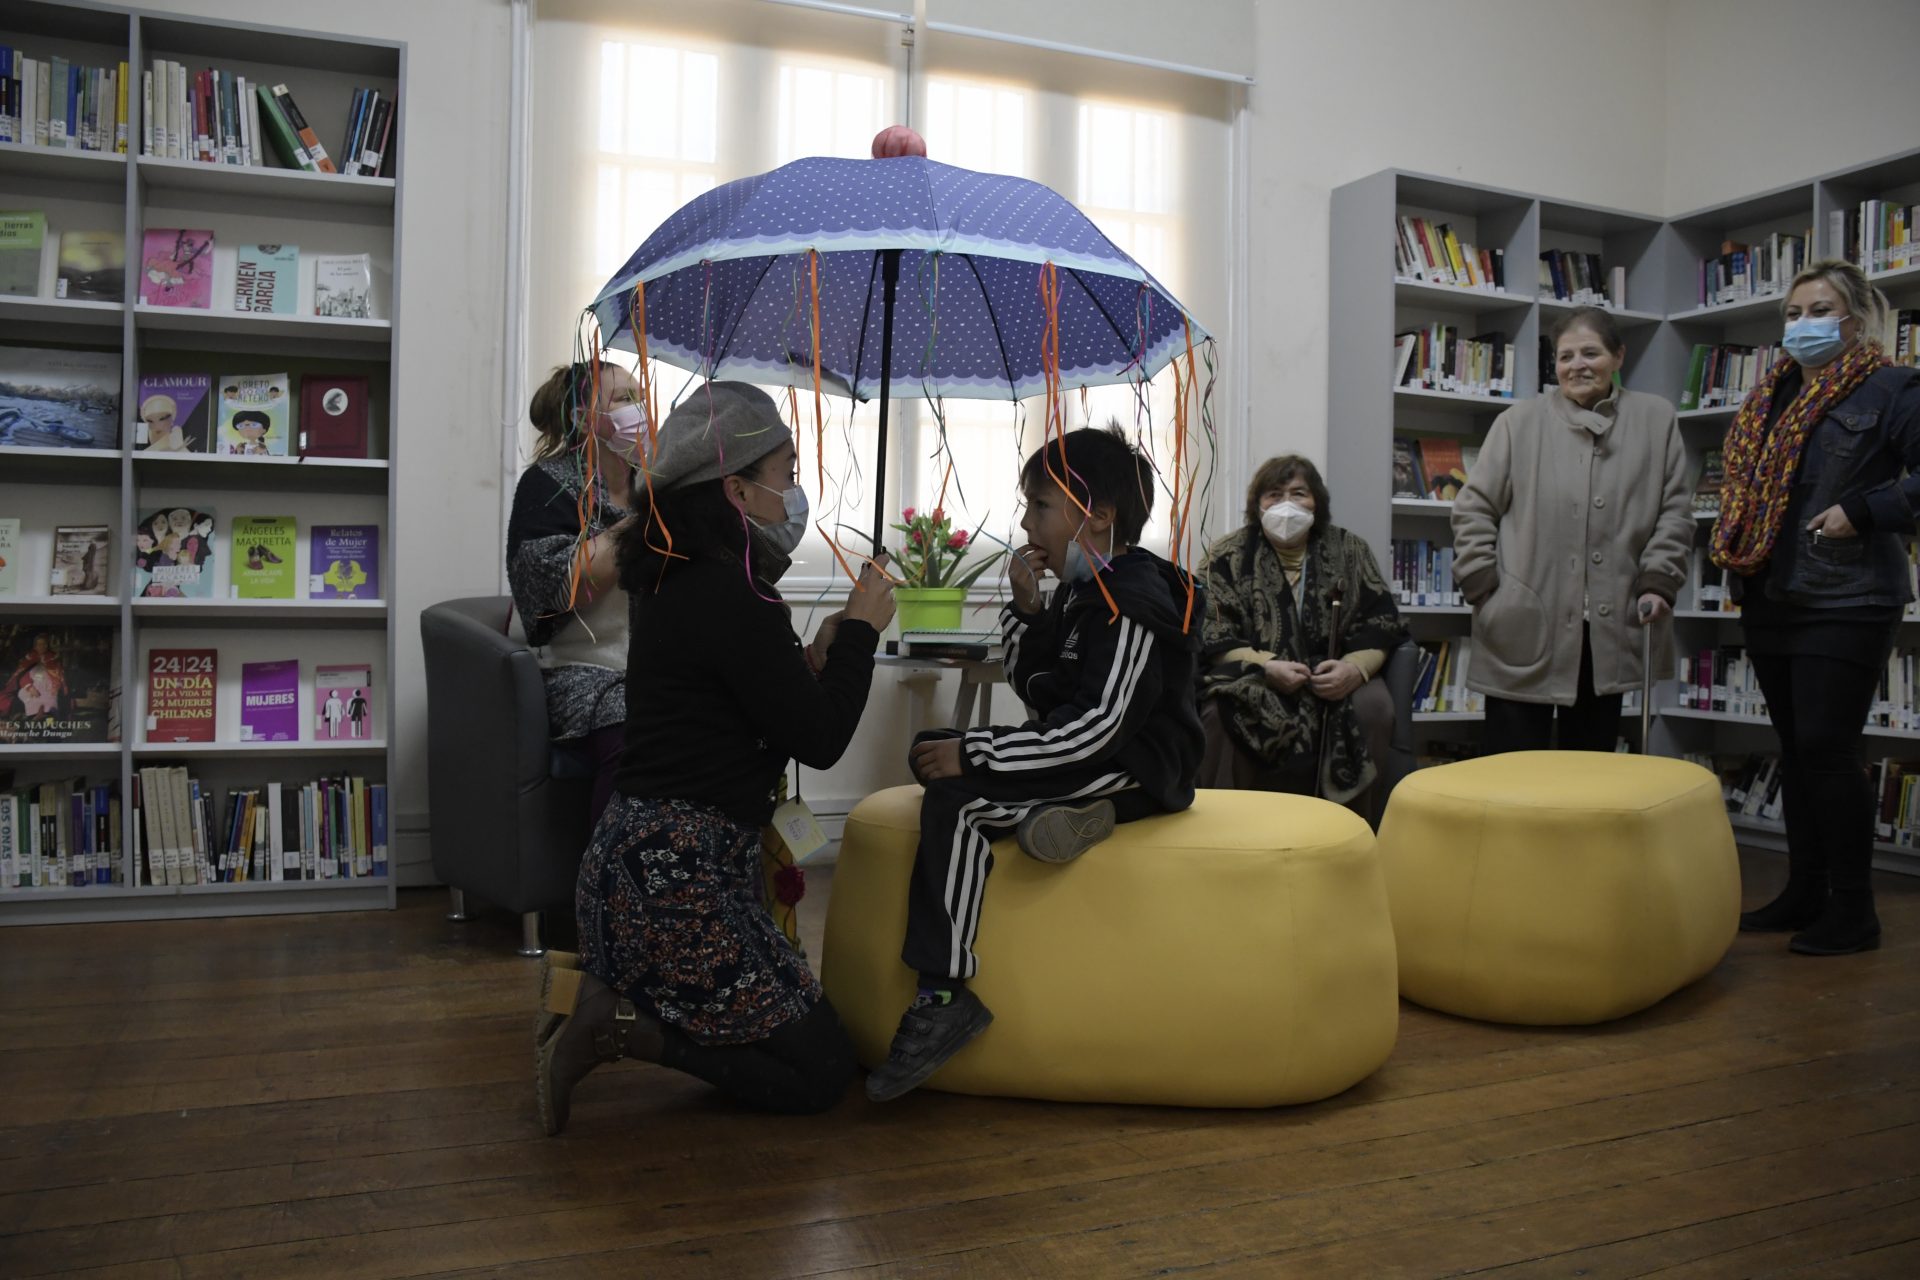 Villa Alemana: Biblioteca Paul Harris se vuelve más inclusiva con espacios de sala cuna y lactancia